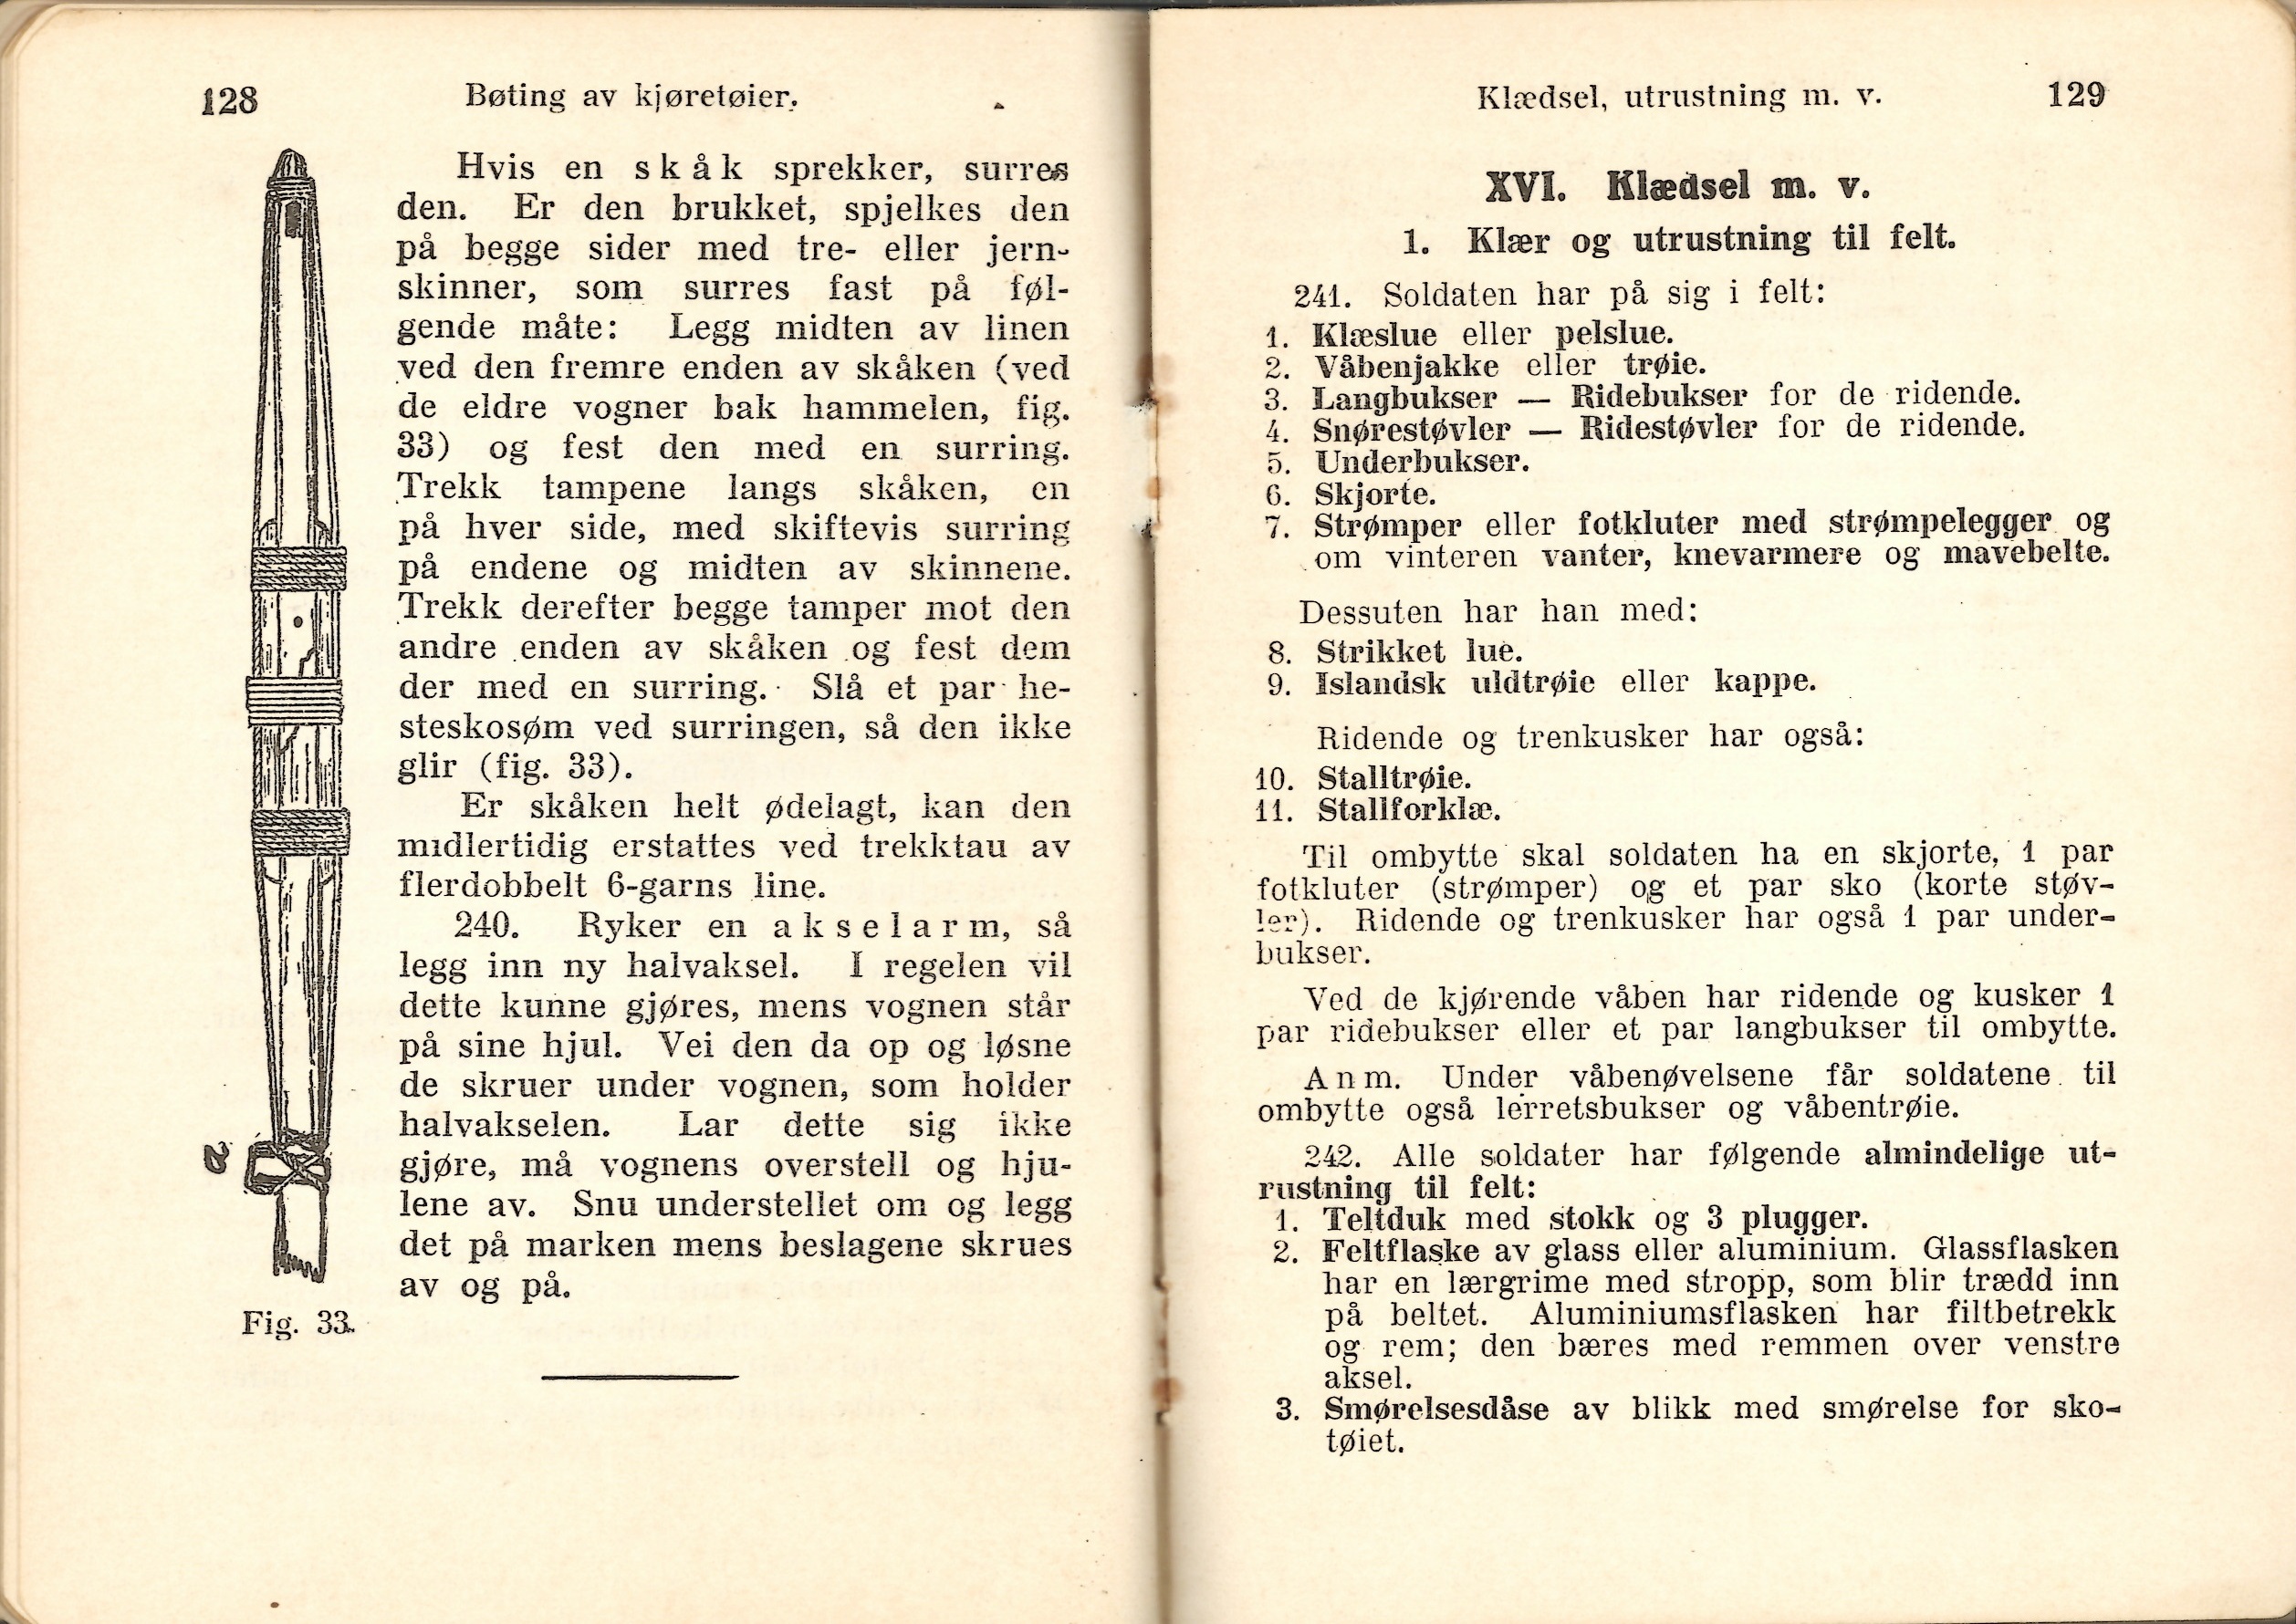 ./doc/reglement/Haandbok1925/Haandbok-for-infanteristen-1925-17.jpg